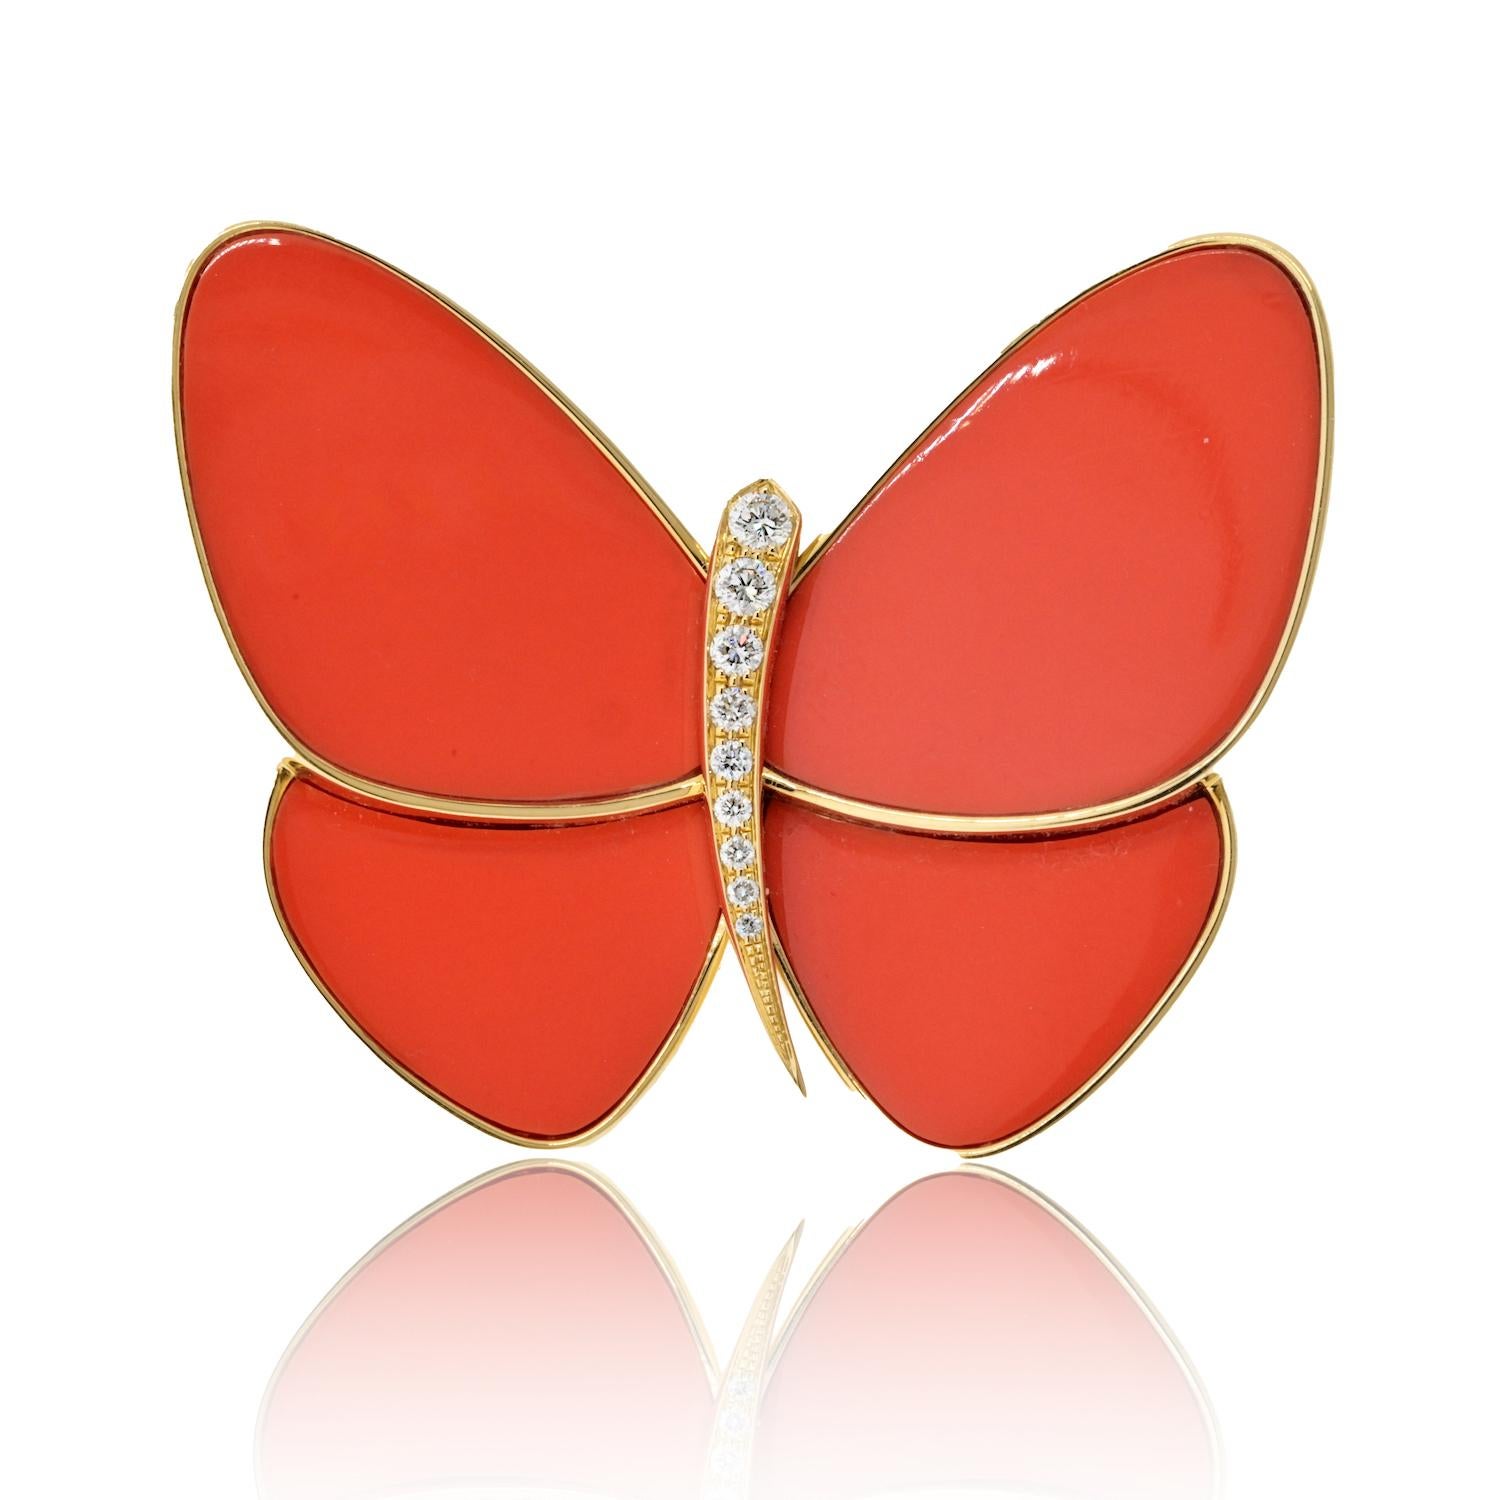 Van Cleef & Arpels présente une création envoûtante : un papillon stylisé orné d'ailes incrustées de corail. Les ailes, d'une riche teinte rouge-orange moyen opaque, captivent l'œil par leur couleur vibrante. Au cœur de ce papillon enchanteur se